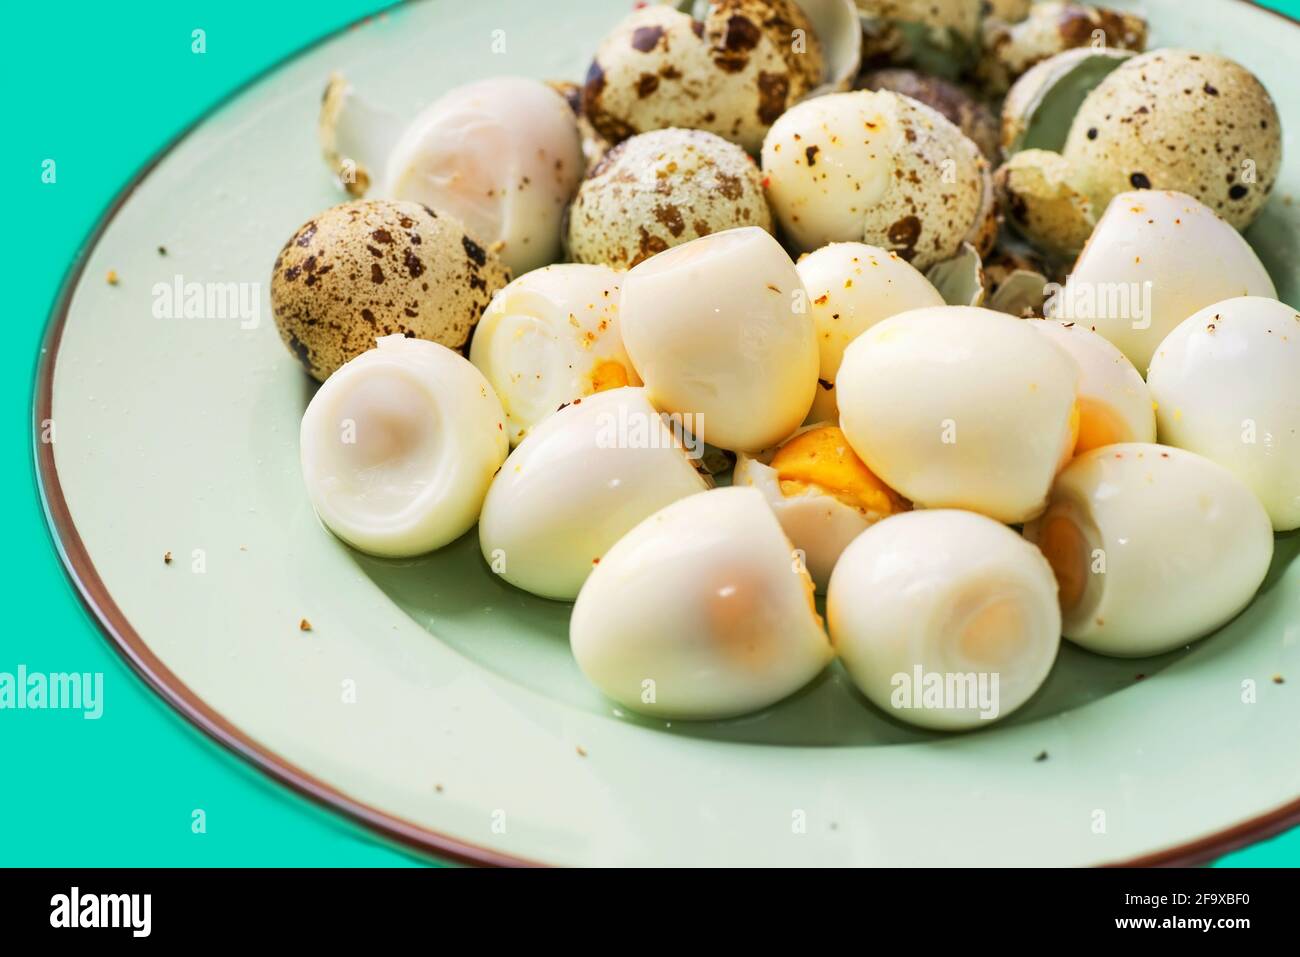 Pin by Kushalagarwal on Eggs